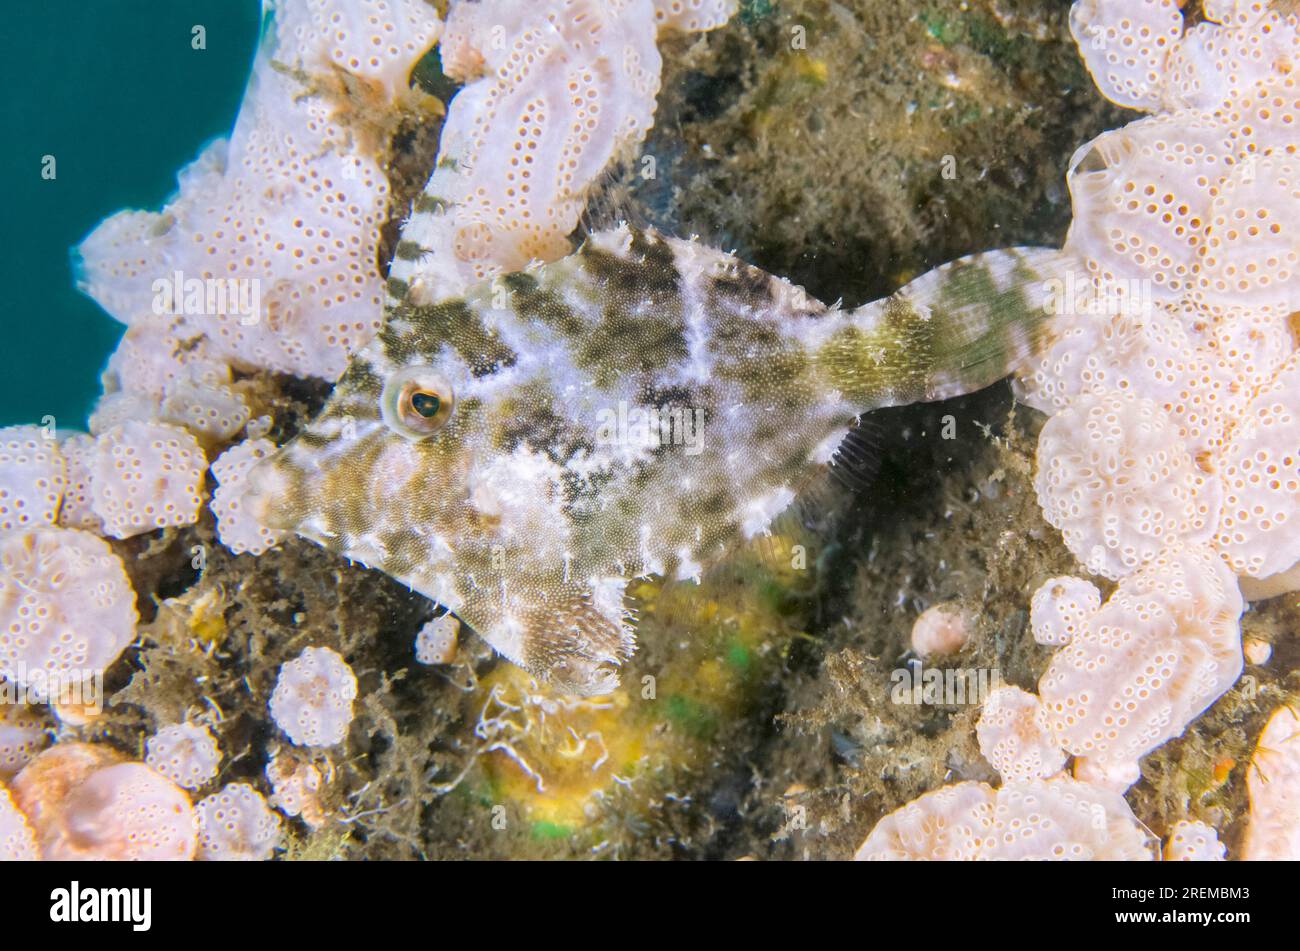 Poissons d'herbiers marins, Acreichthys tomentosus, par tuniciers, famille des Ascidiidae, site de plongée Secret Bay, Gilimanuk, Jembrana Regency, Bali, Indonésie Banque D'Images